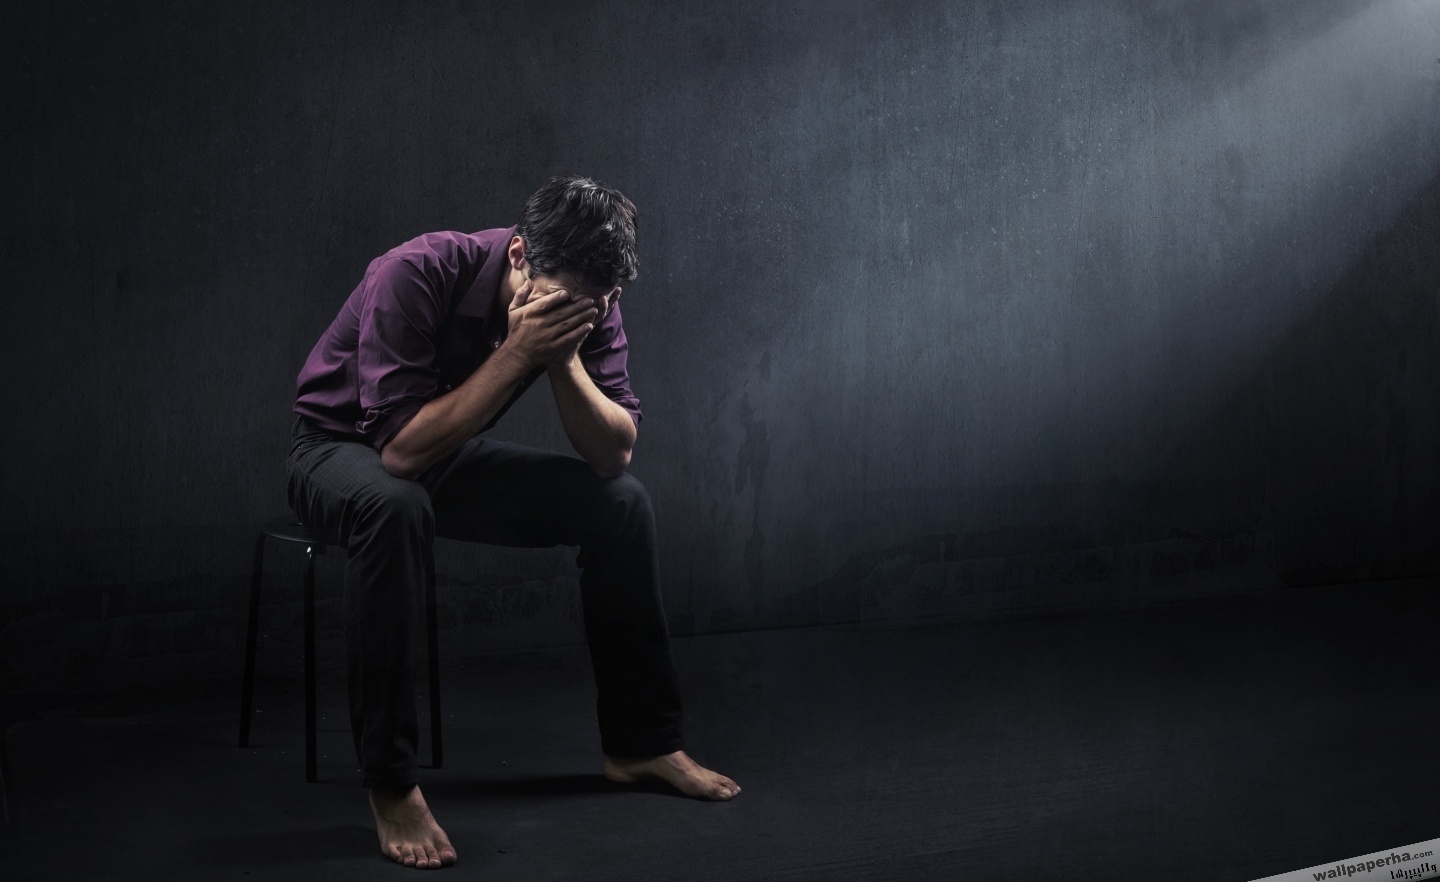 آنچه باید درباره افسردگی بدانید - 12 دلیل افسردگی زنان و مردان